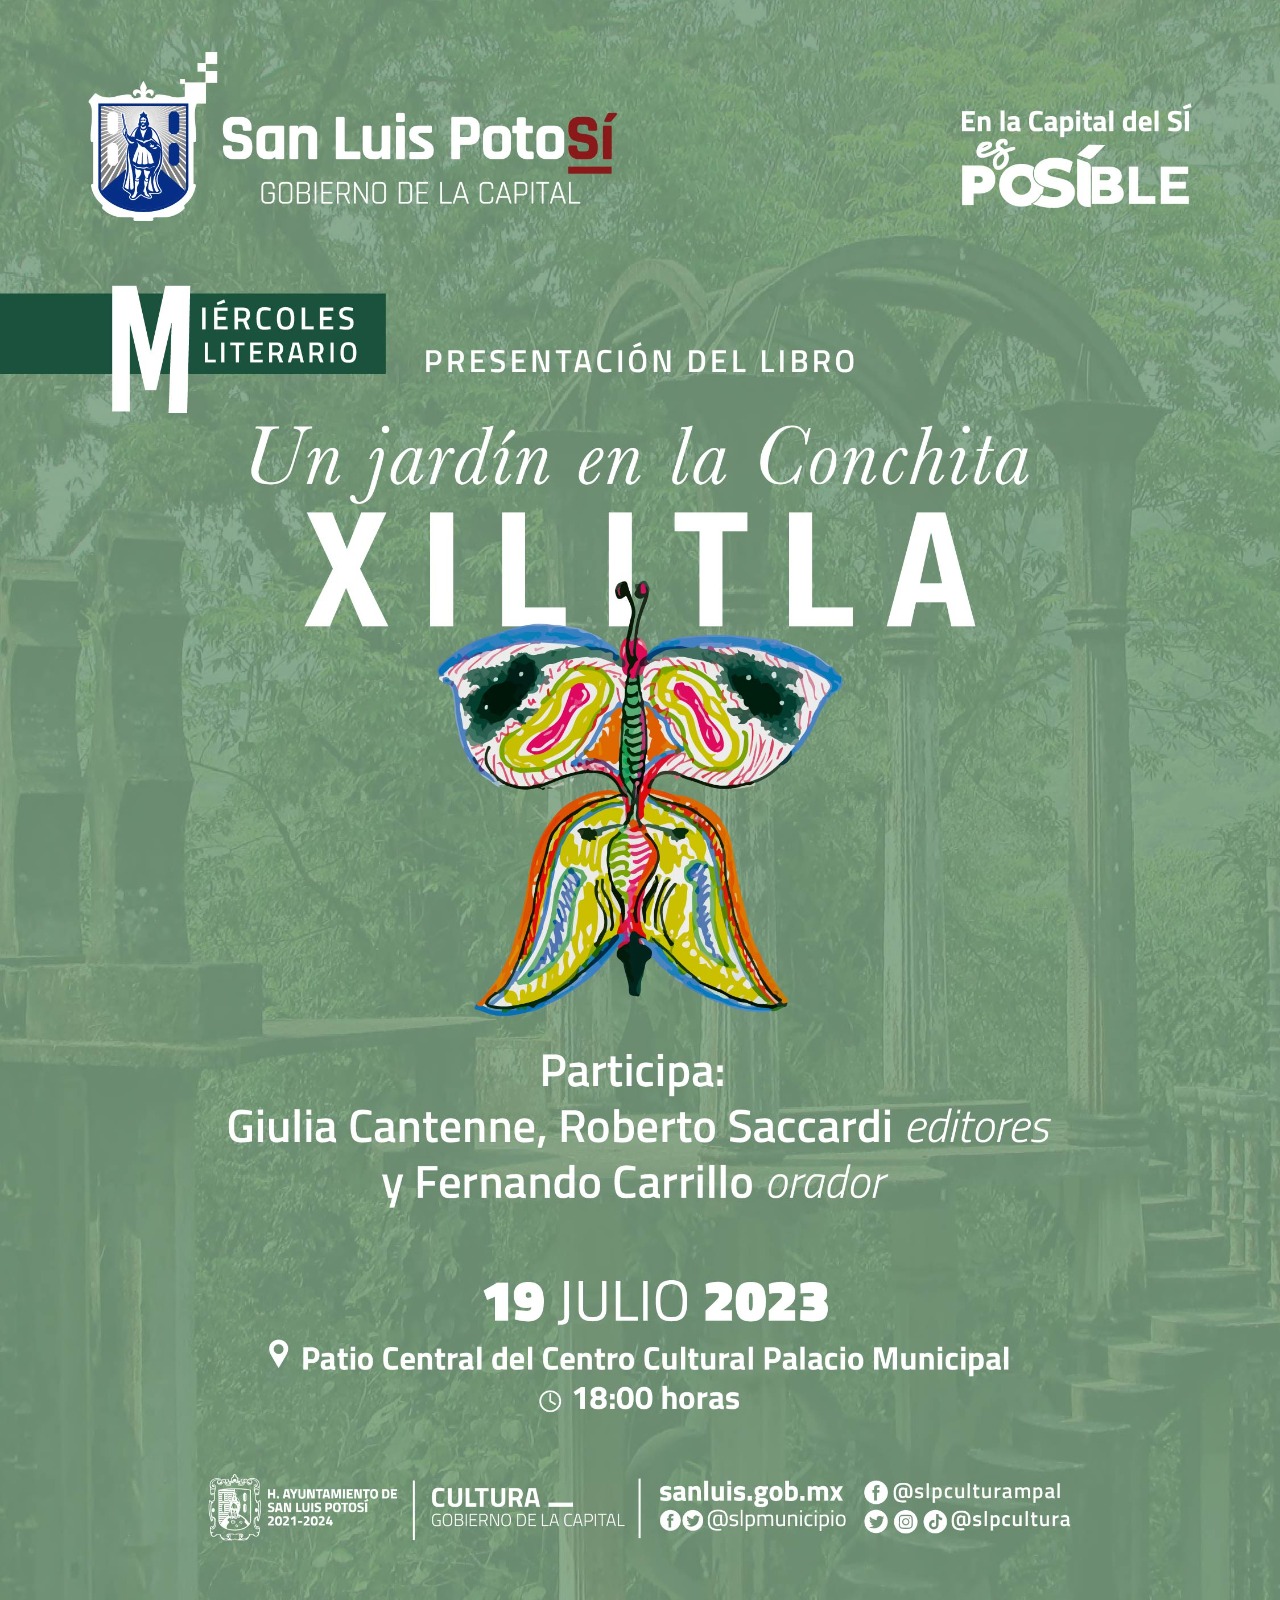 El Gobierno de la Capital y la Dirección de Cultura invitan a la presentación del libro: “Un jardín en la Conchita, XILITLA”